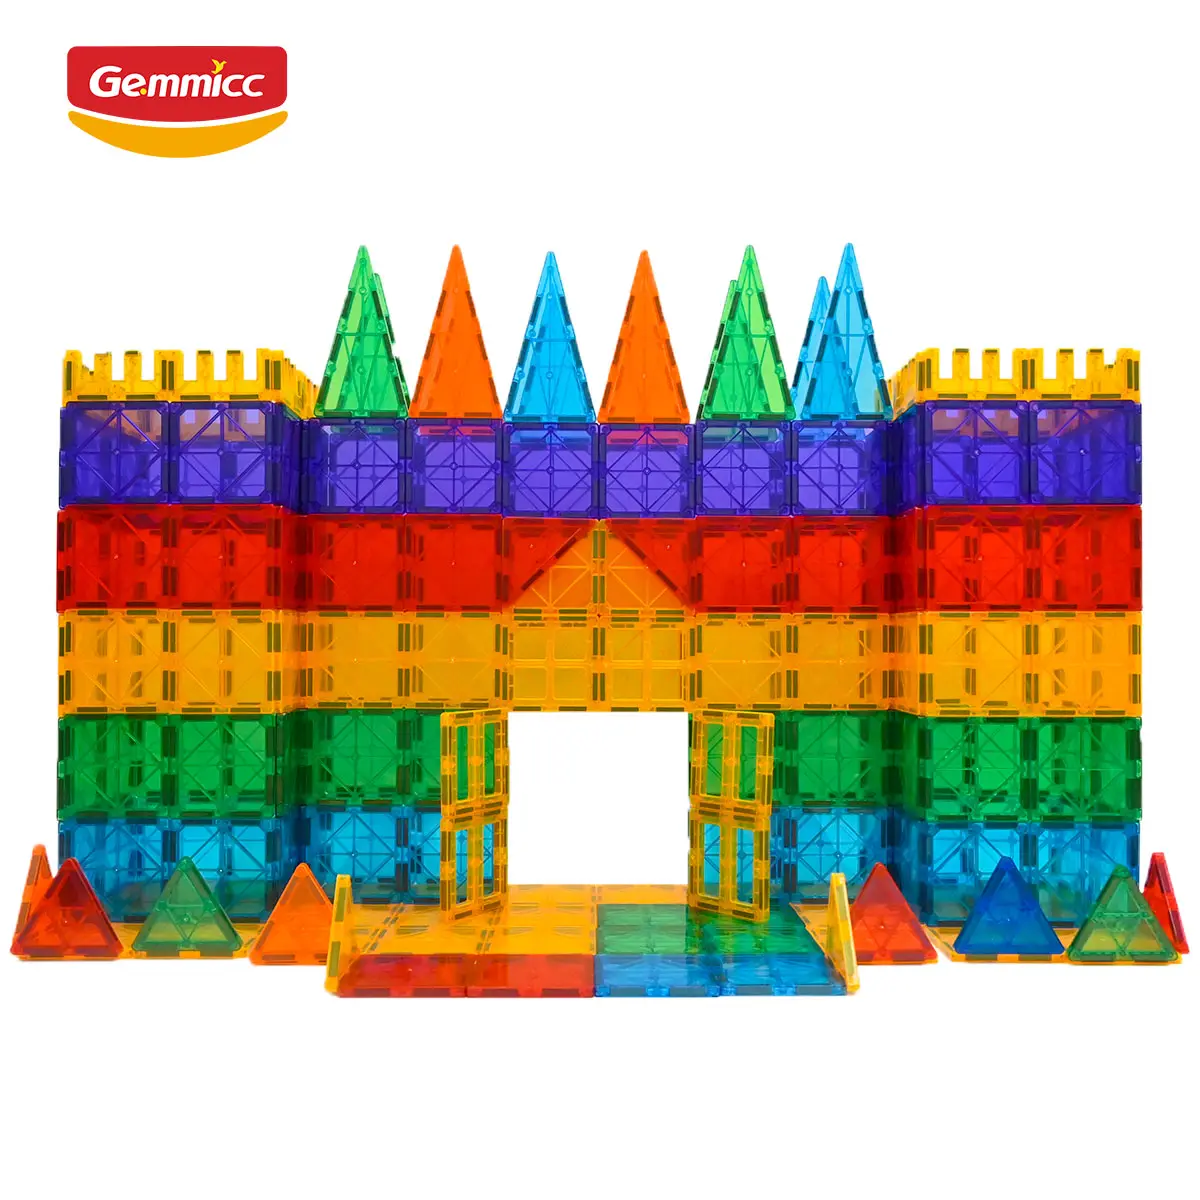 Gemmicc 200ชิ้นสามารถสร้างจำนวนมากของรูปร่างเด็กปัญญาของเล่นแม่เหล็กชุดอาคารบล็อก